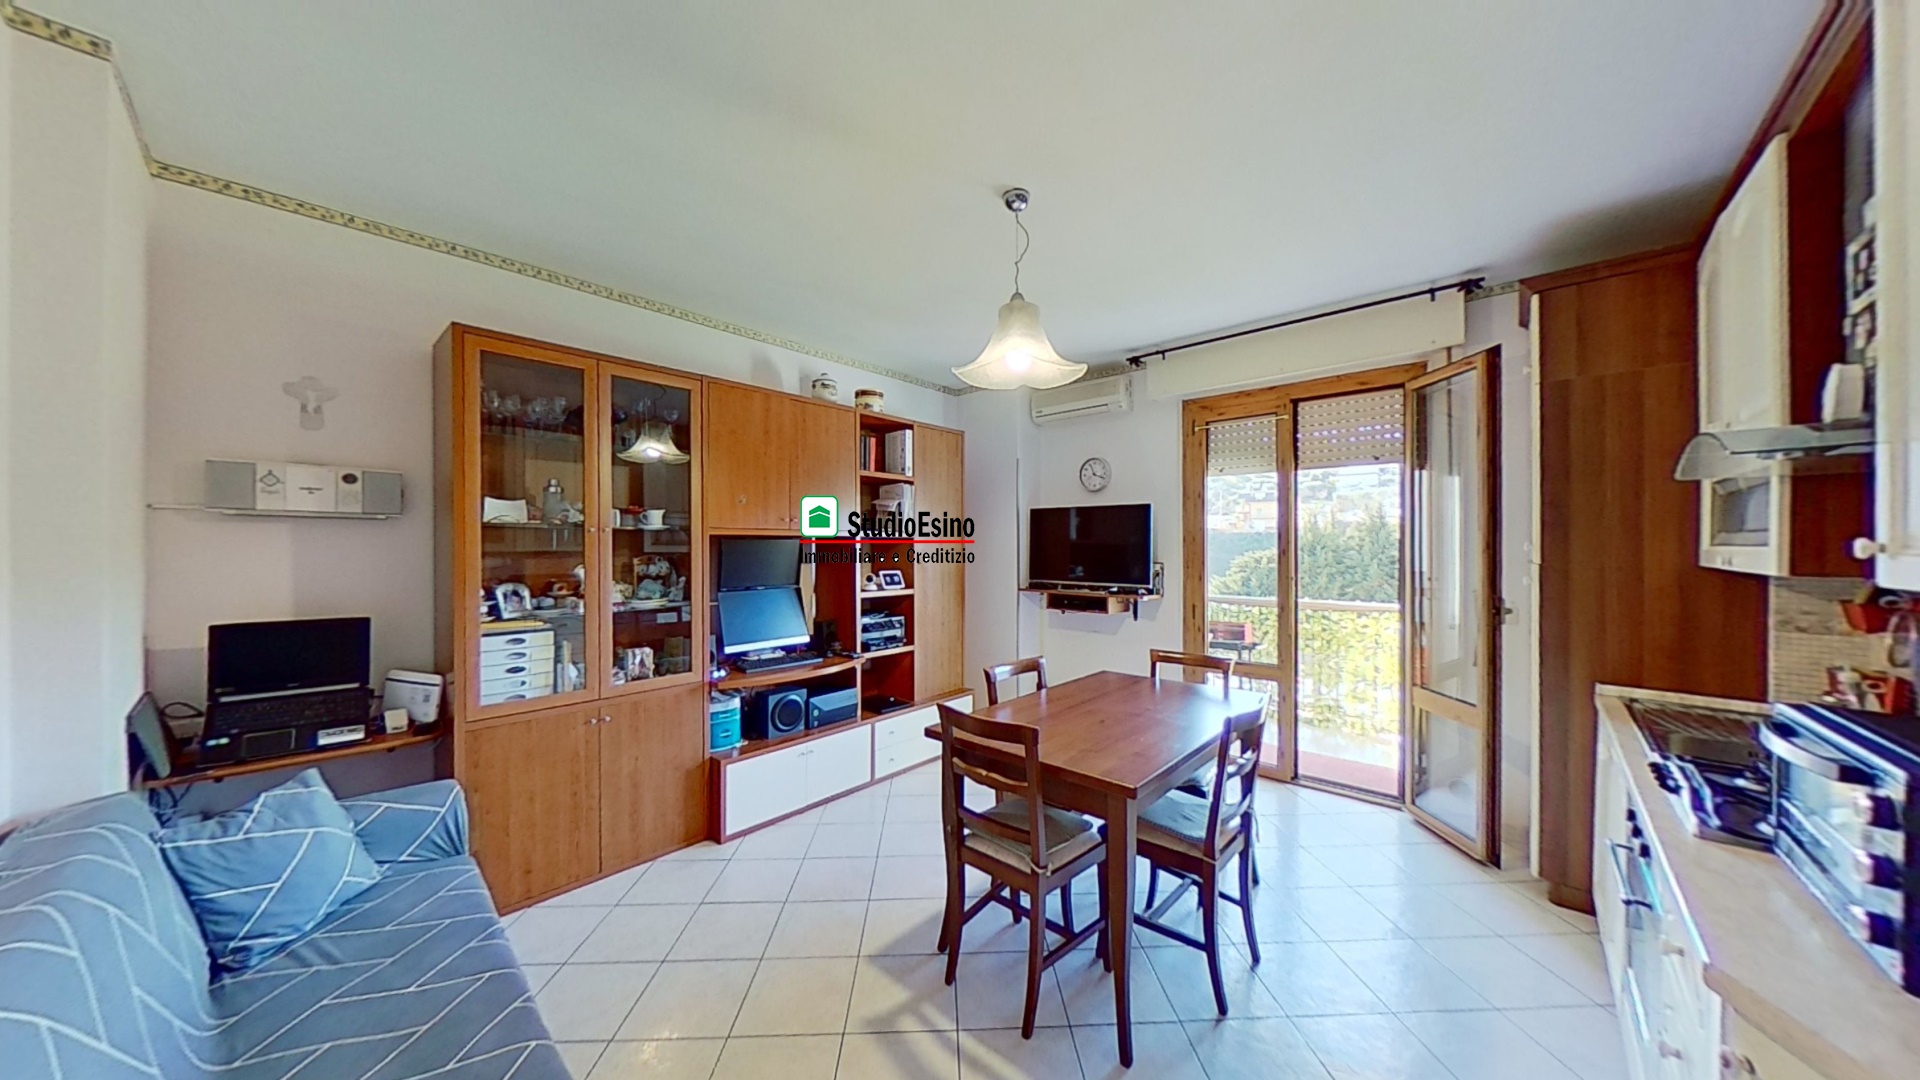 Appartamento in vendita a San Benedetto del Tronto, 3 locali, prezzo € 135.000 | PortaleAgenzieImmobiliari.it